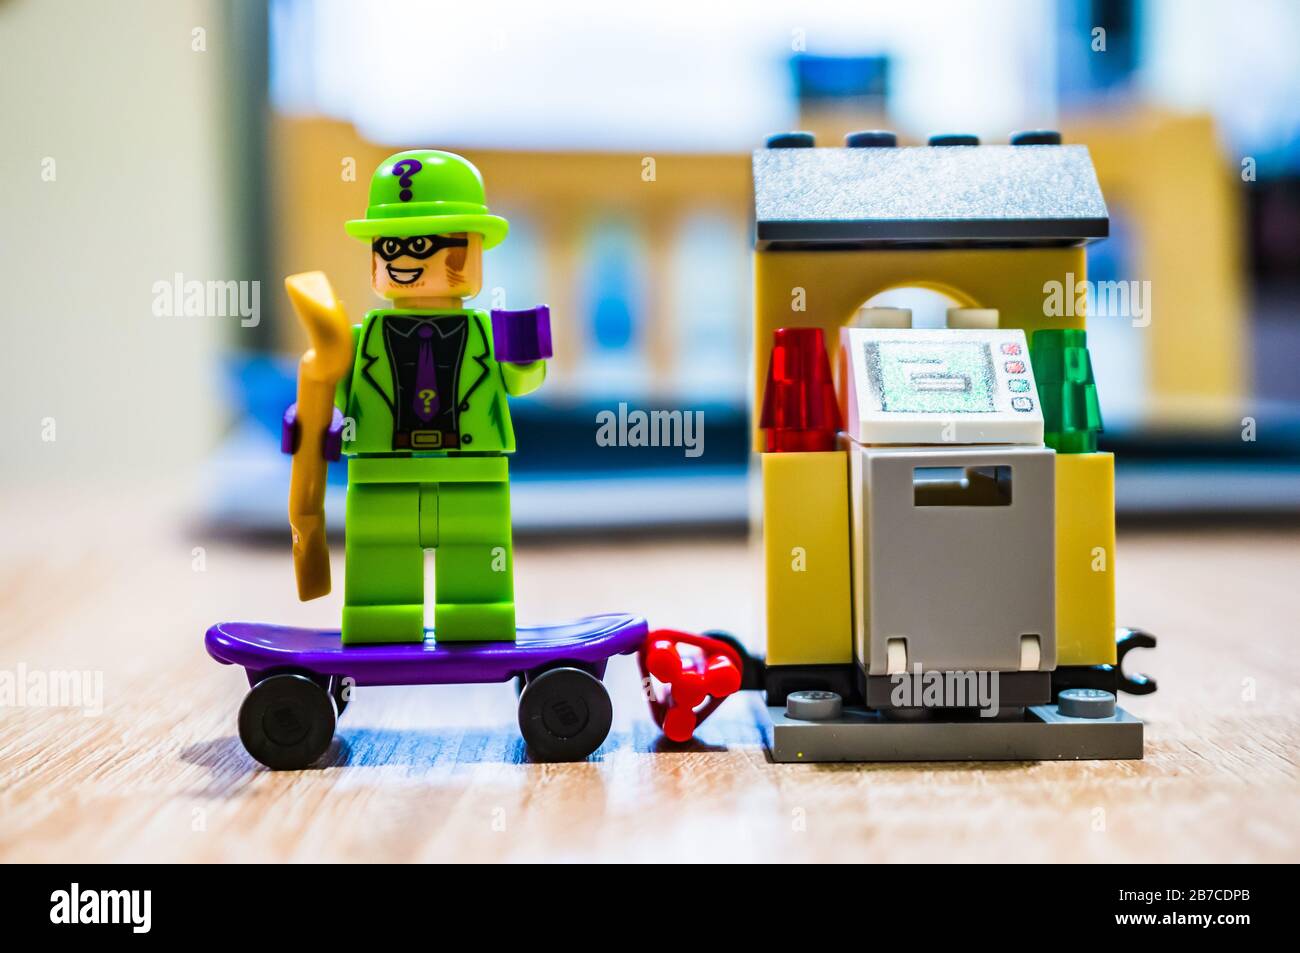 POSEN, POLEN - 29. Februar 2020: LEGO die Figur des Riddler Bösewichts, die auf einem Skateboard steht und mit einem Raub im Hintergrund des weichen Fokus beschäftigt ist. Figurine i. Stockfoto